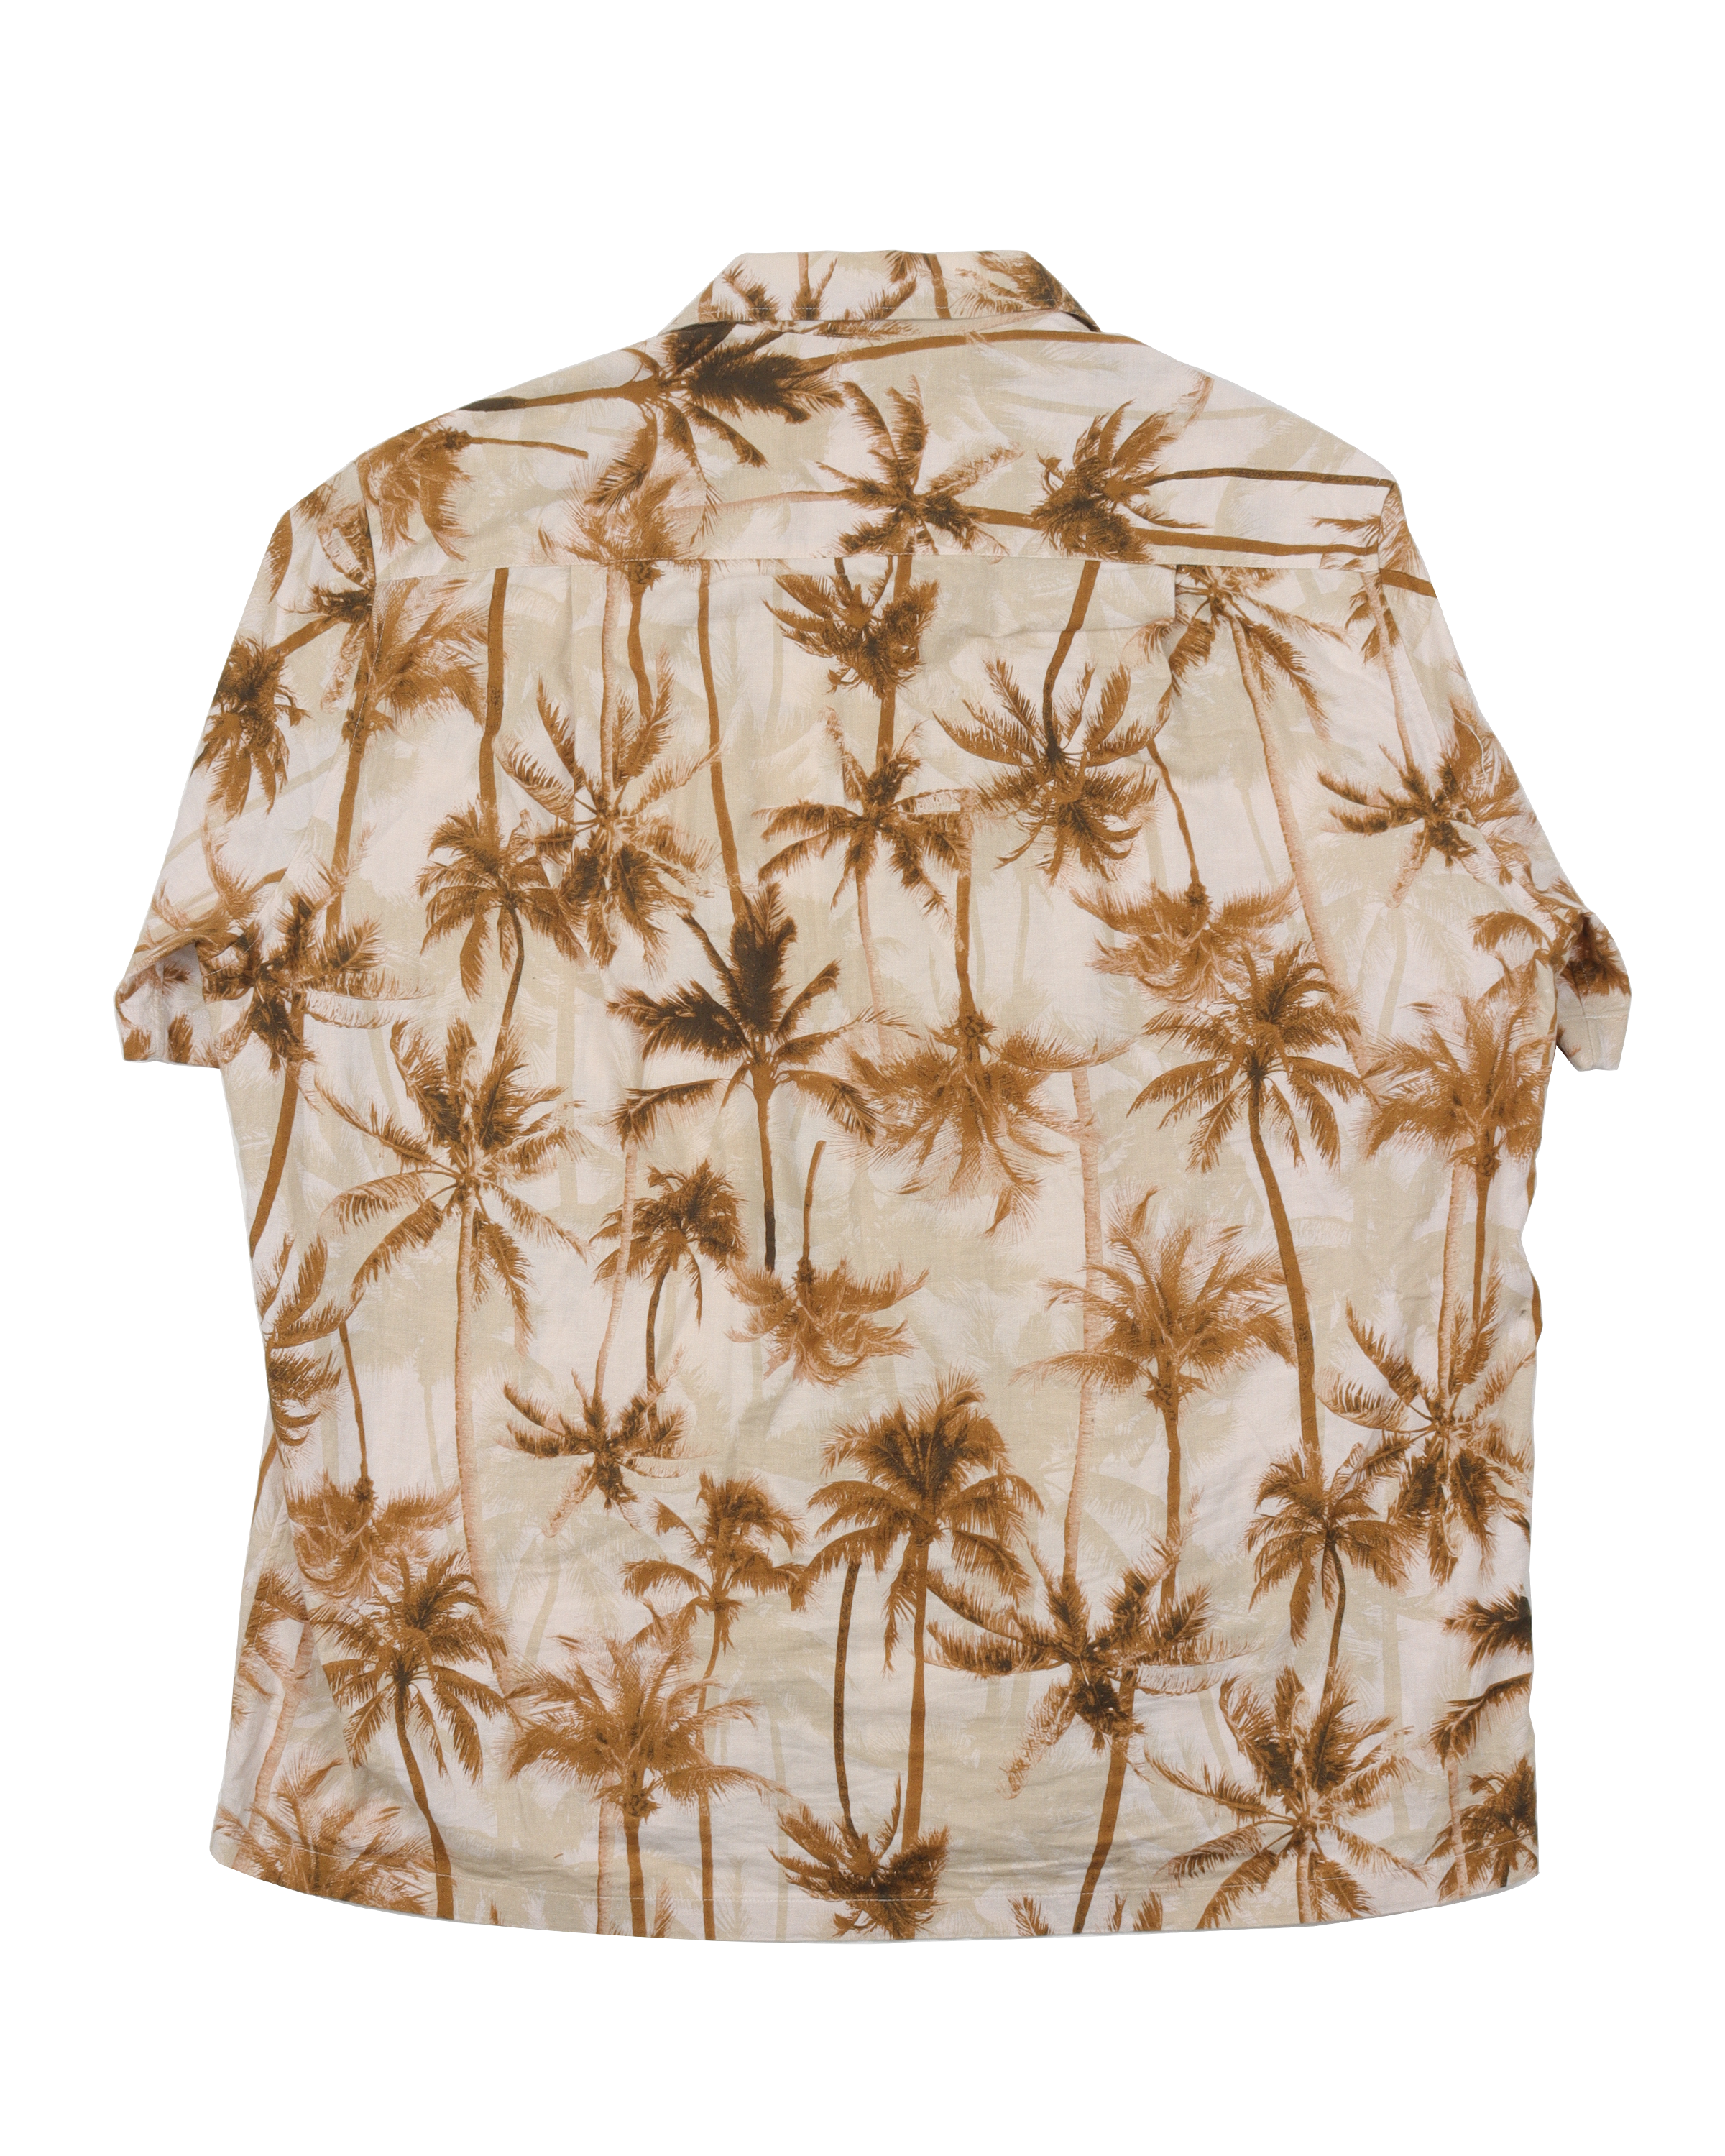 Palm Tree Print Shirt SS15